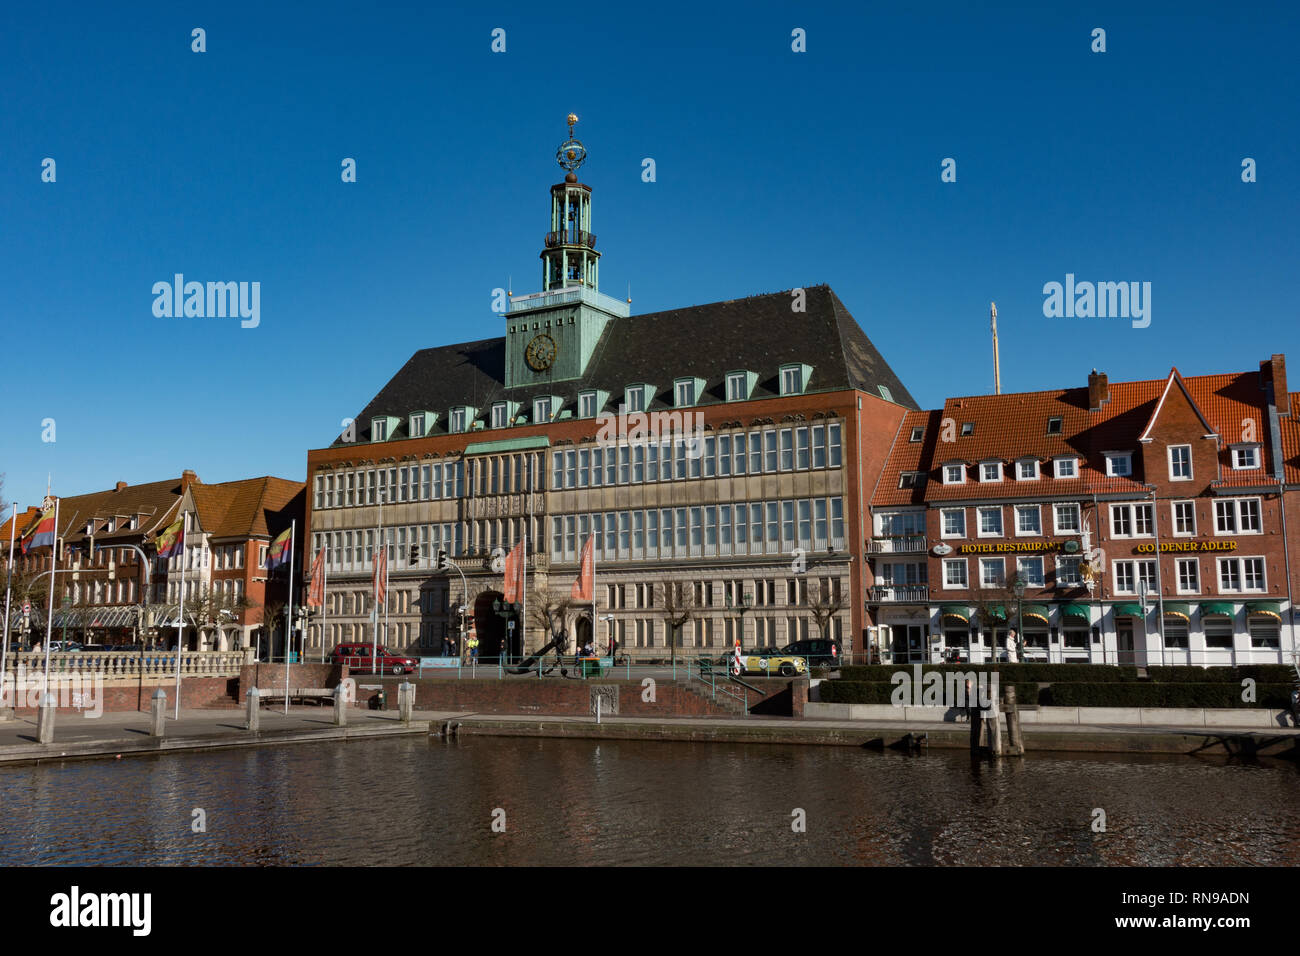 The City Hall. Emden. Germany Stock Photo